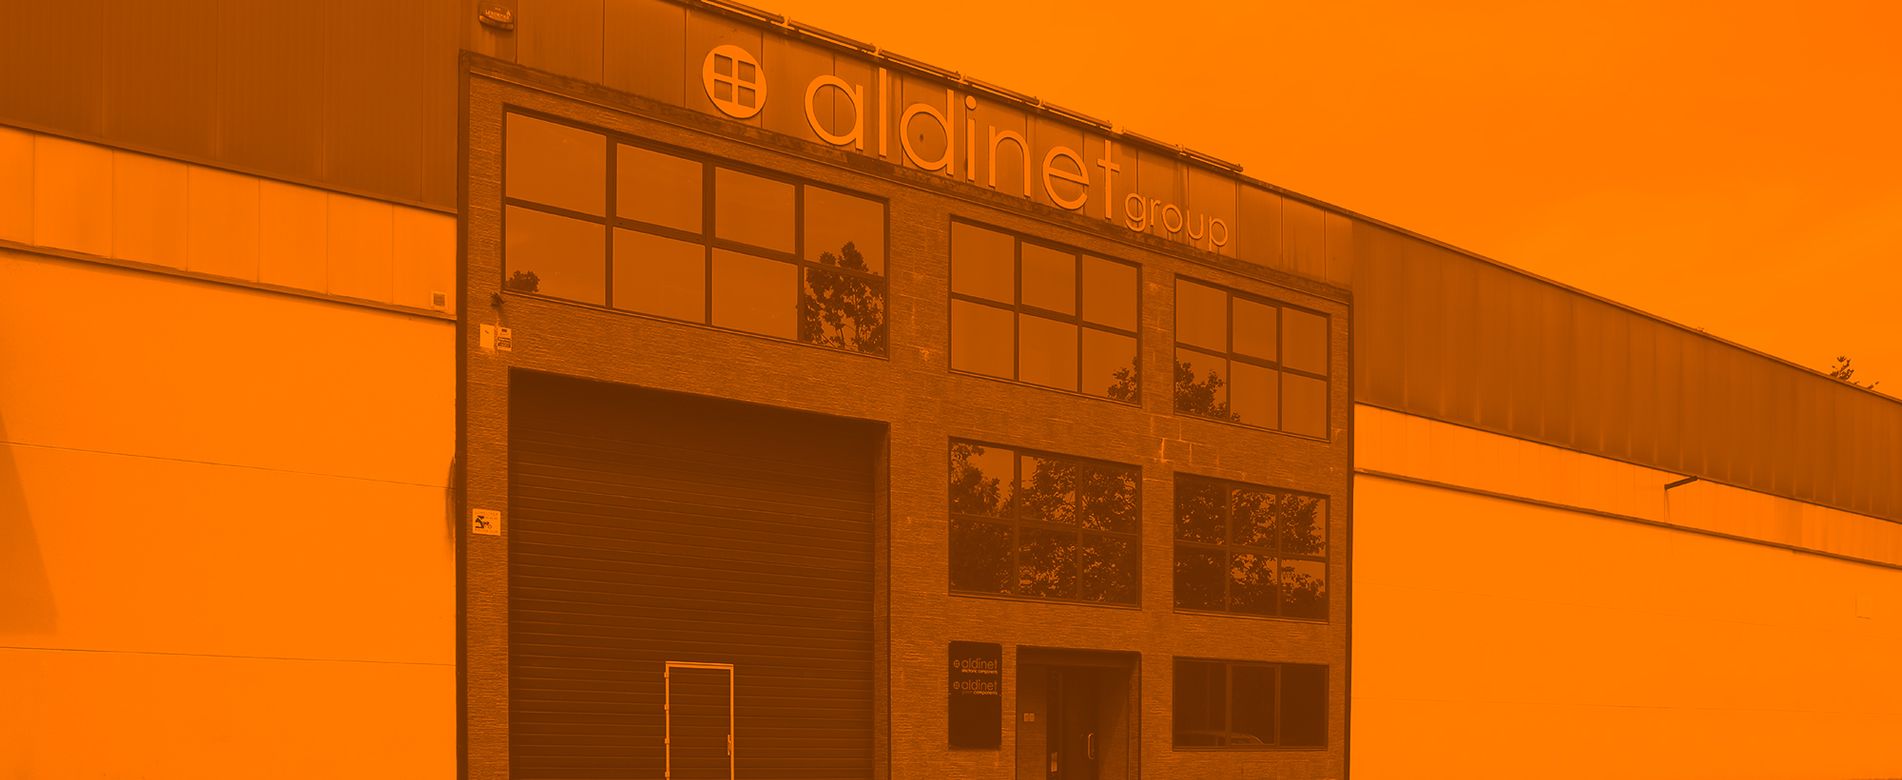 Contacta con Aldinet para recibir un servicio personalizado en el suministro de componentes electrónicos